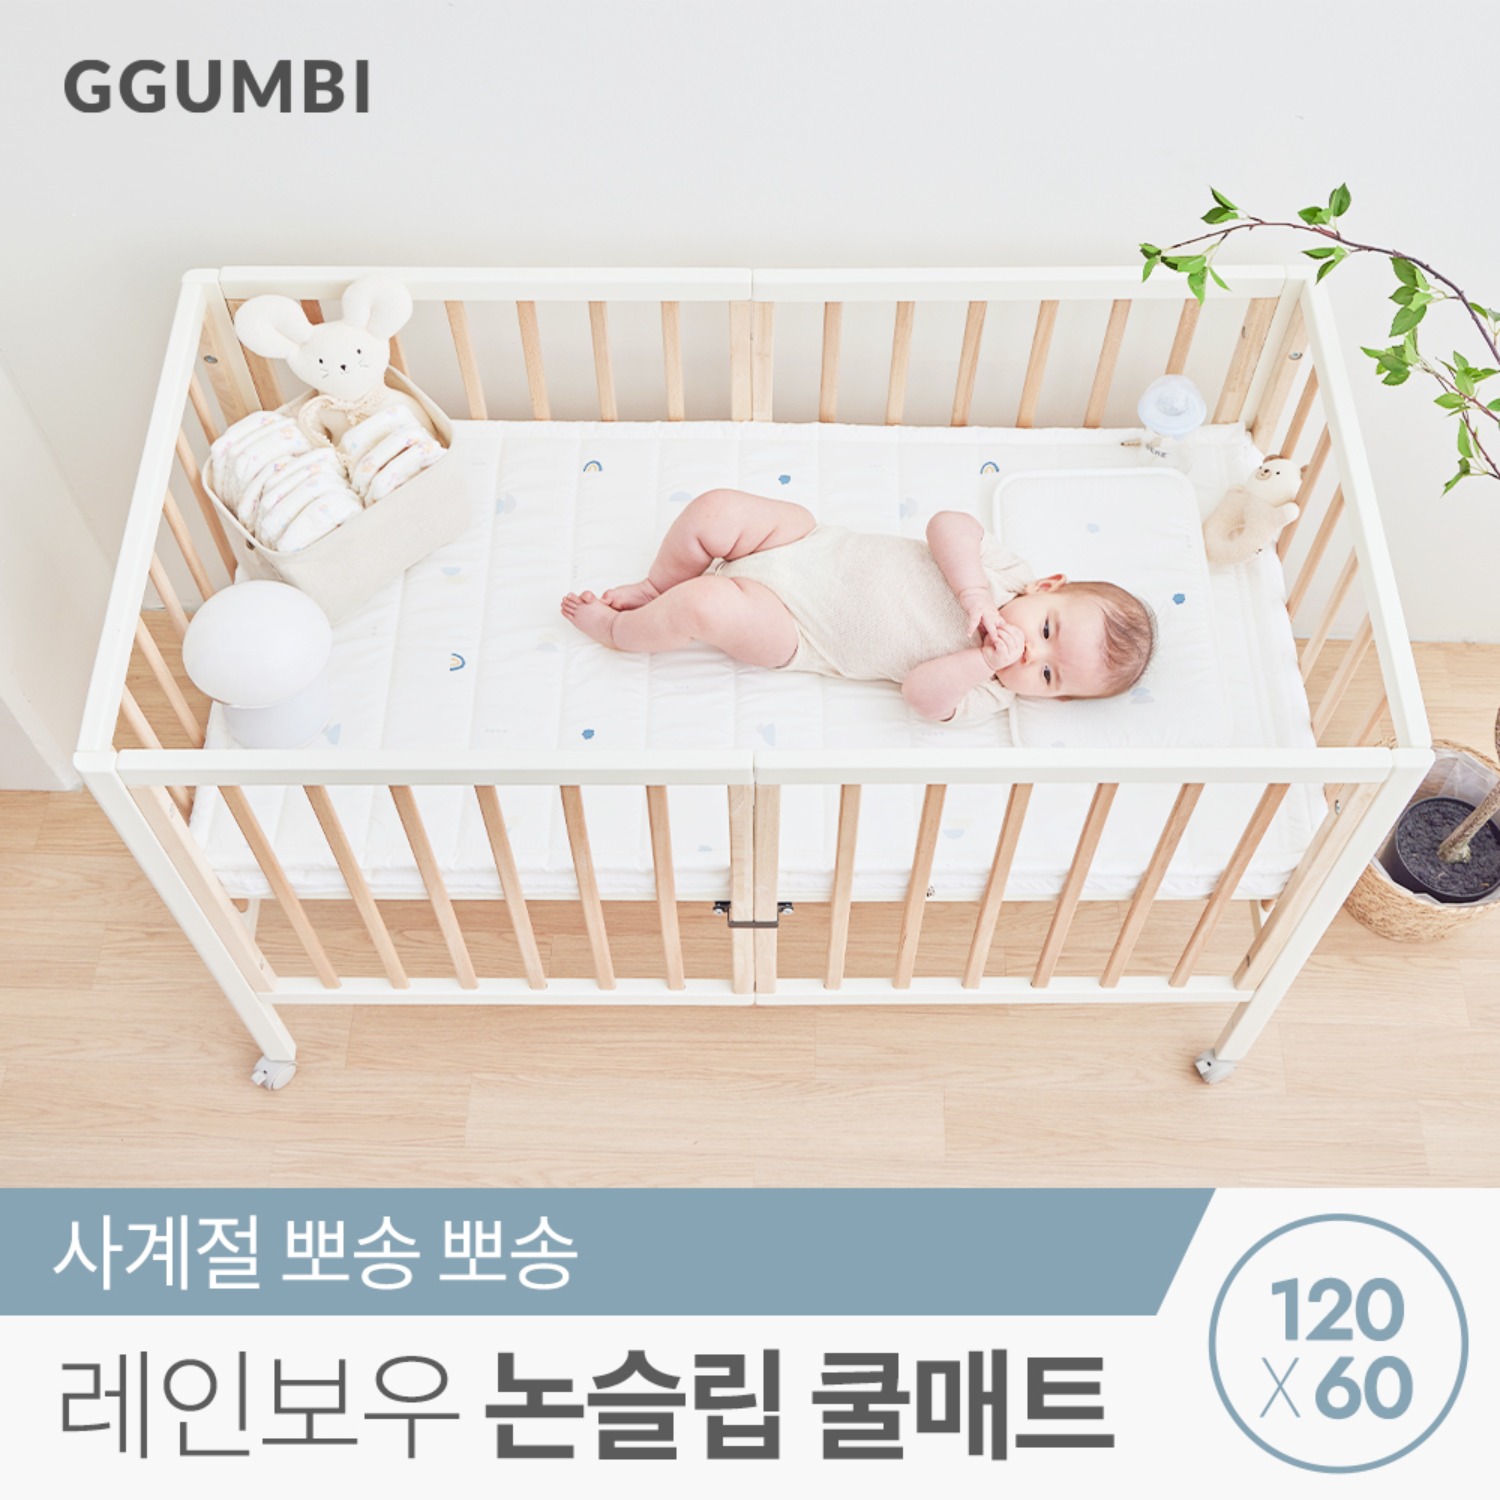 [꿈비] 레인보우 논슬립 3D 쿨매트 60x120cm 신생아 아기 에어메쉬 쿨매쉬